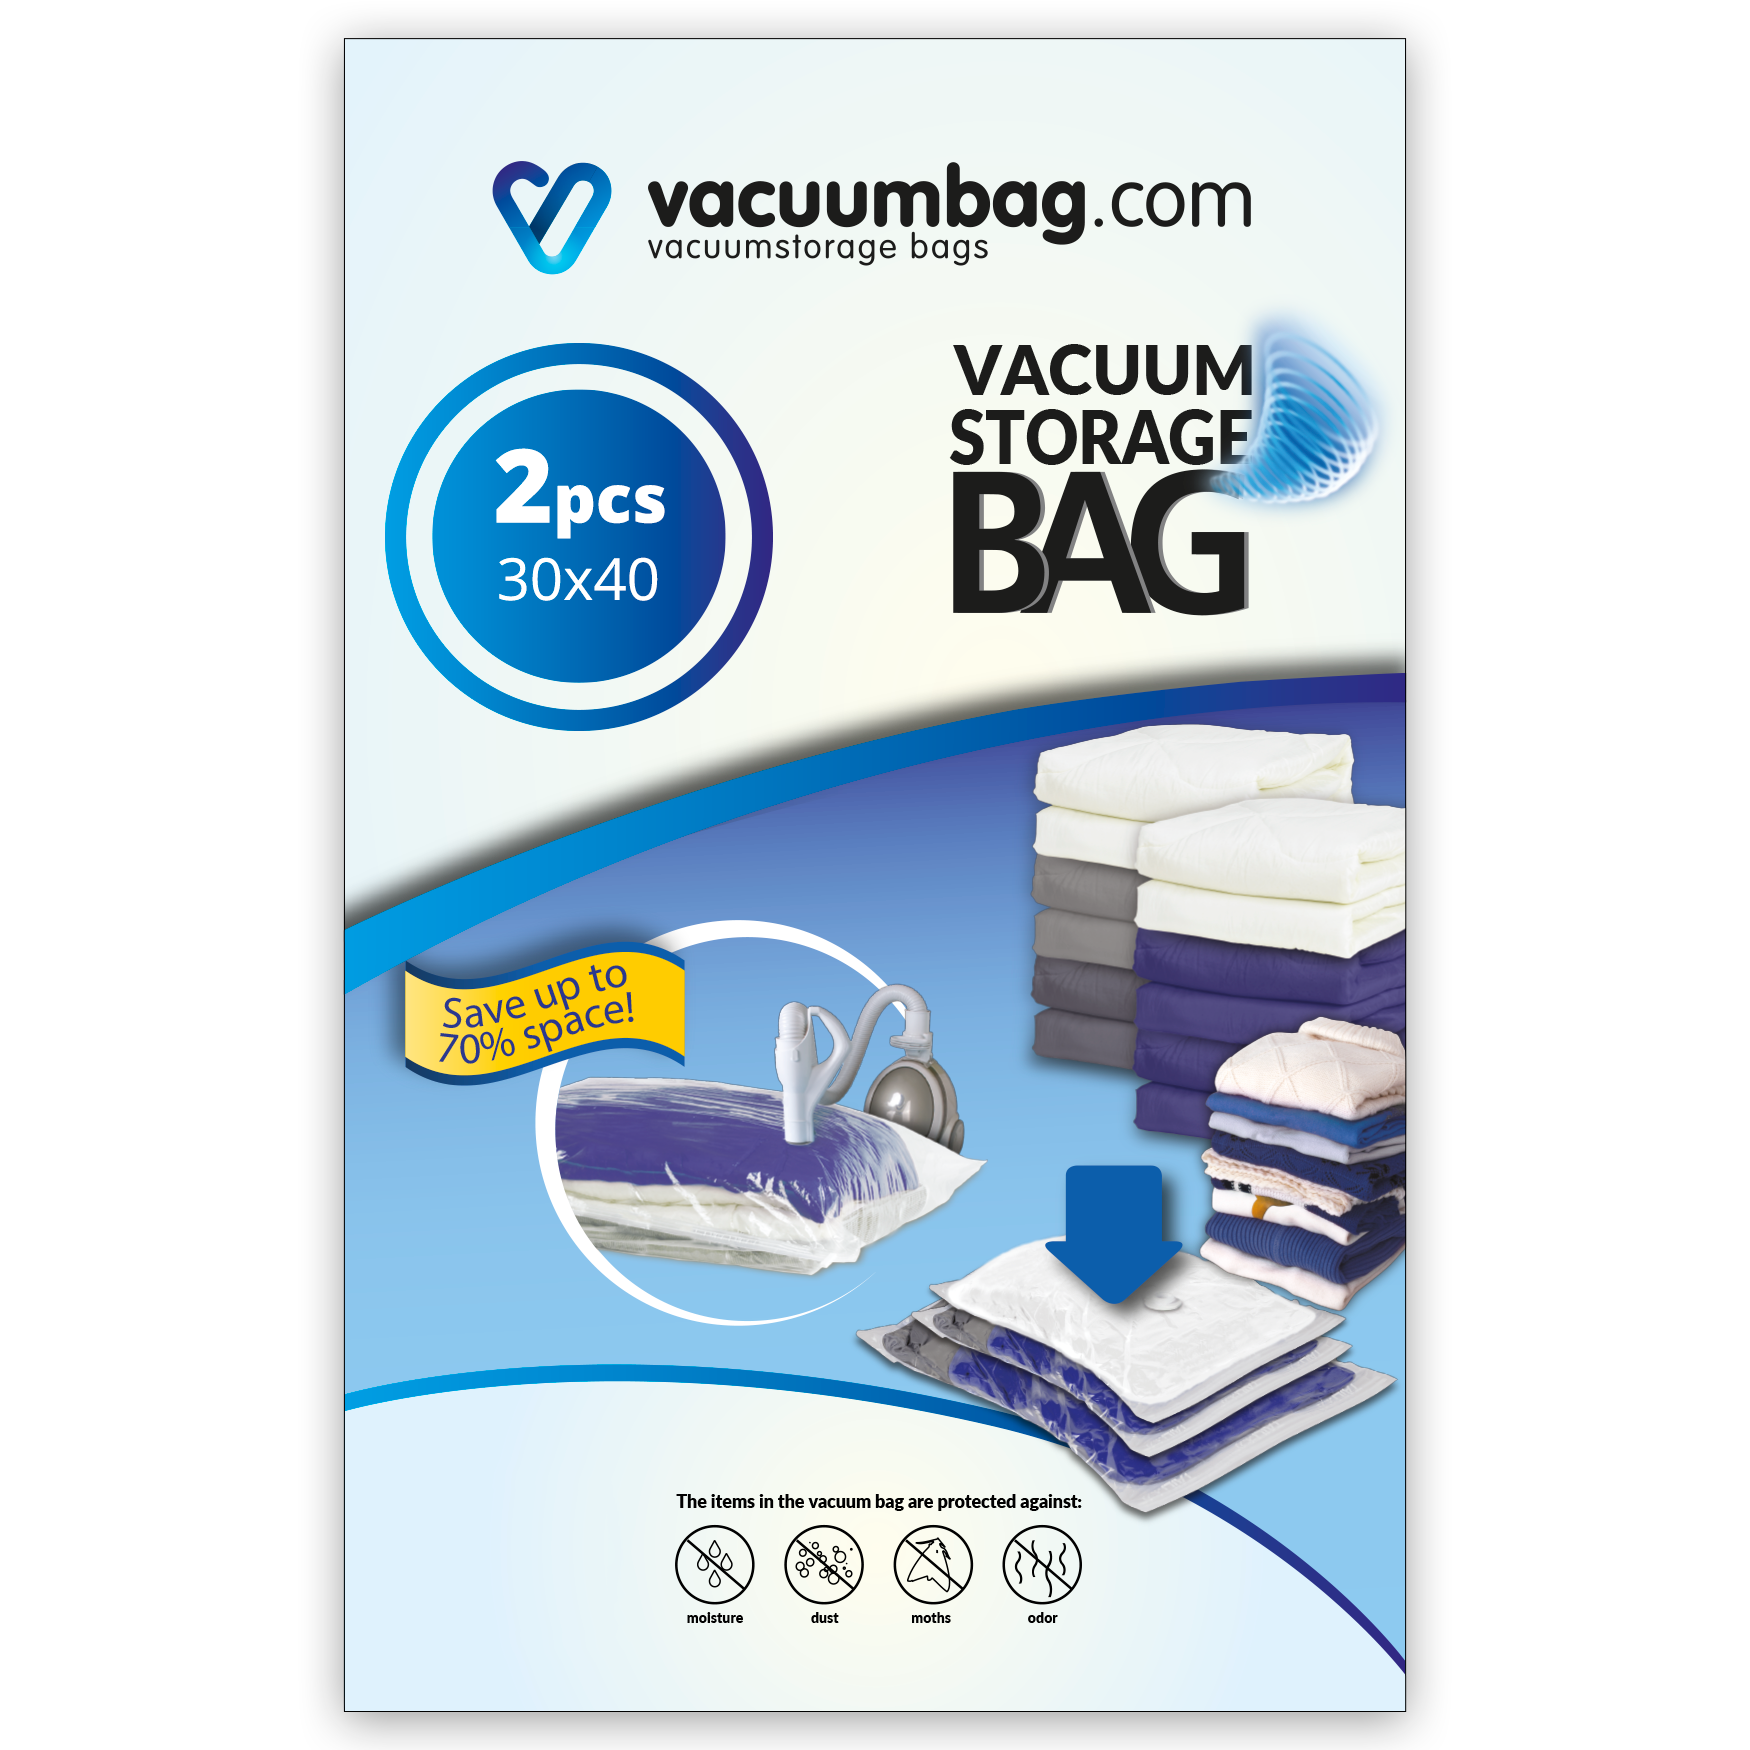 https://vacuumbag.com/cdn/shop/products/image1.png?v=1681971238&width=1920